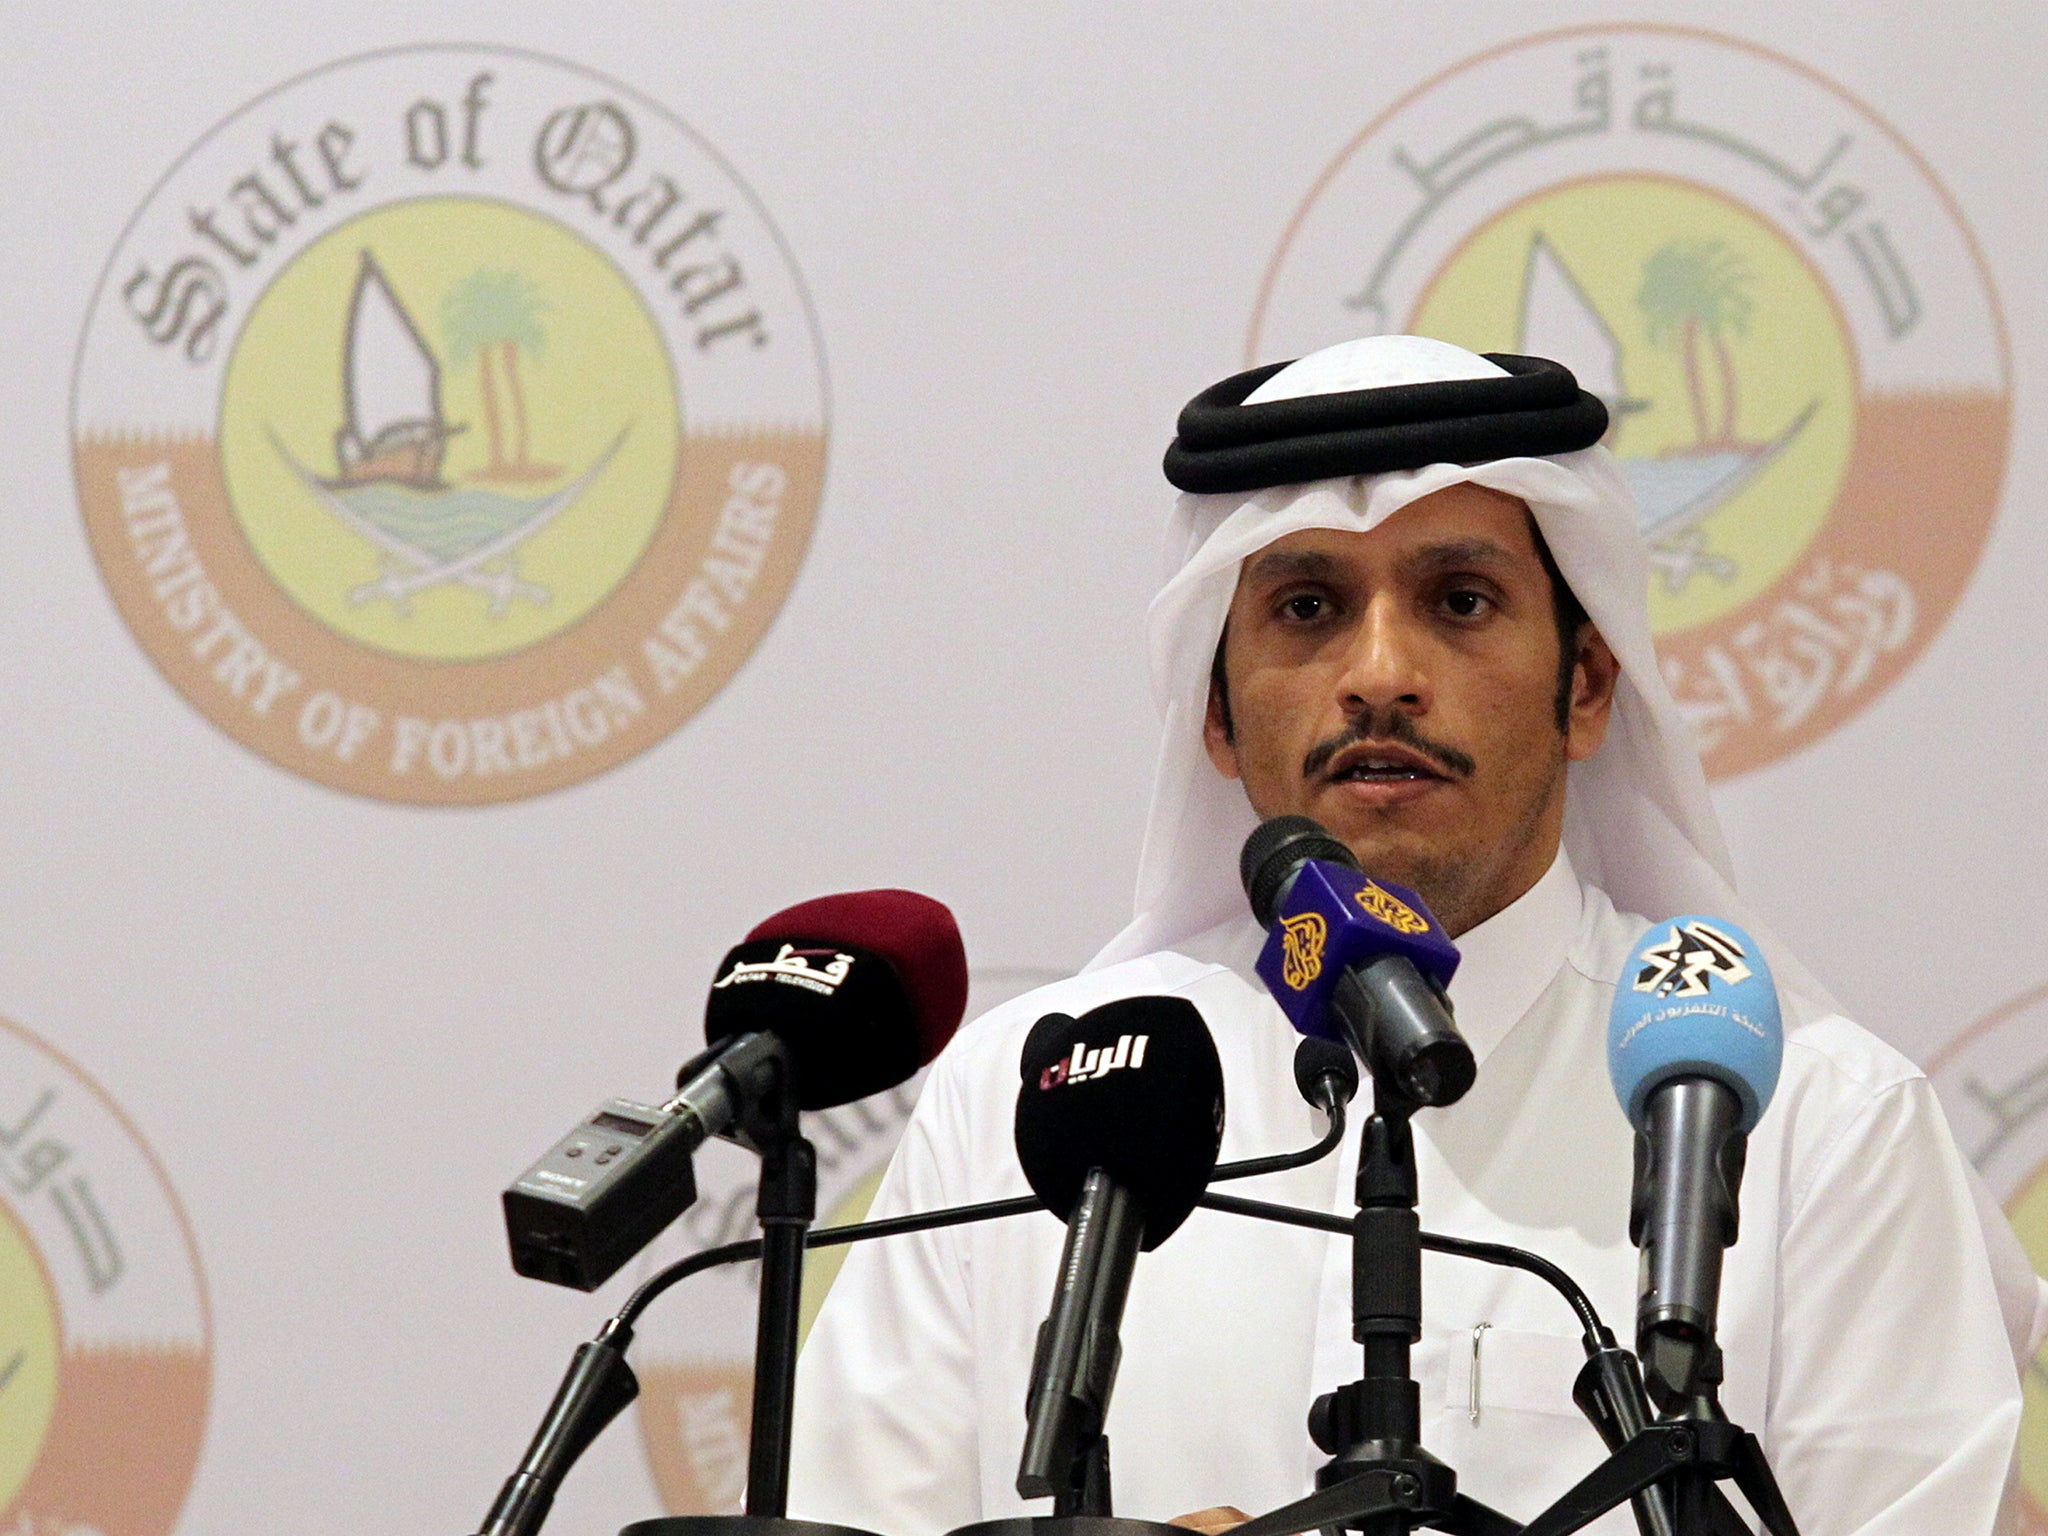 Qatar's Foreign Minister Sheikh Mohammed bin Abdulrahman al-Thani